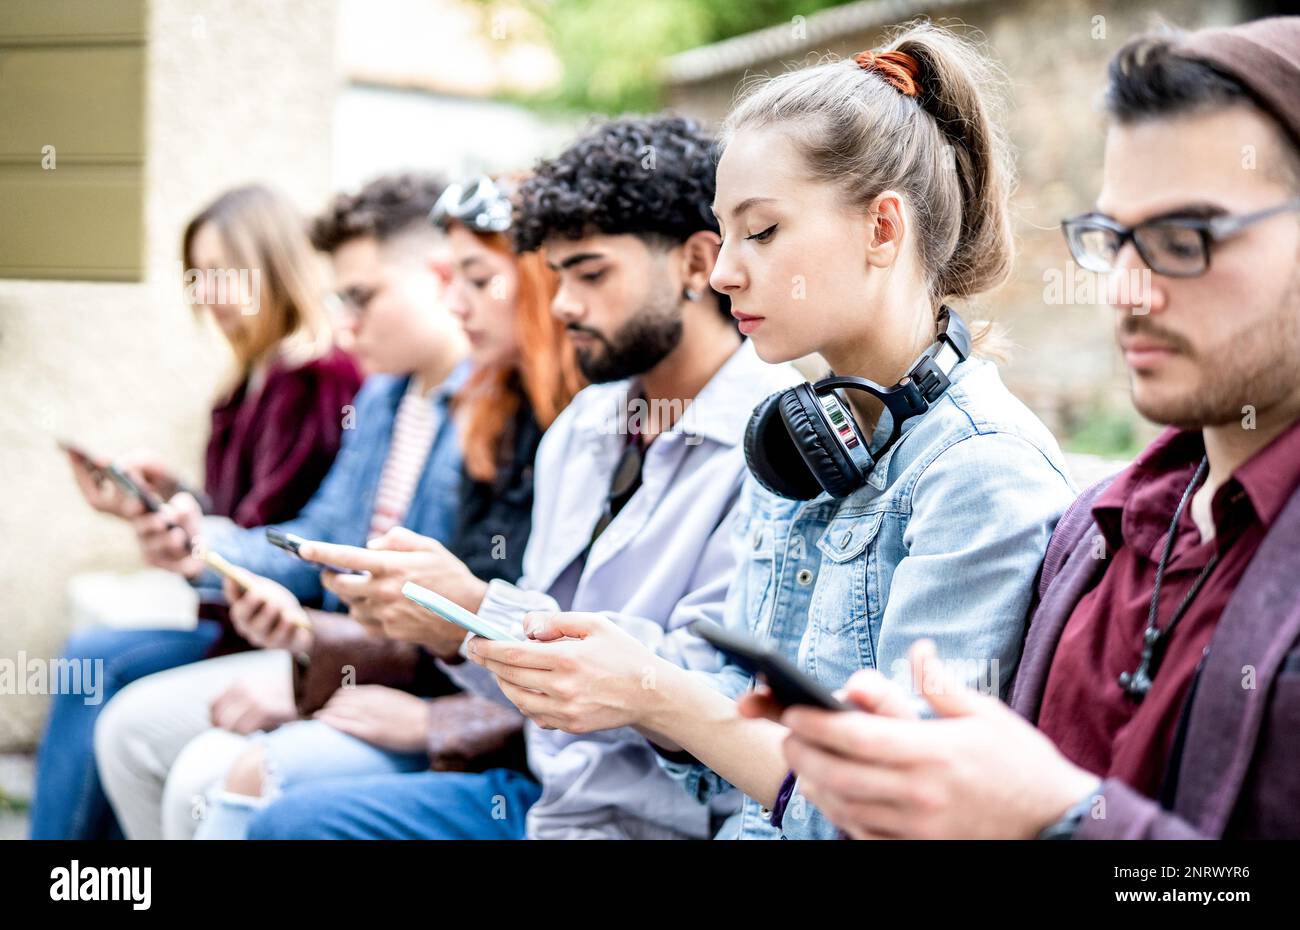 Seitenansicht von Milenial-Männern und -Frauen, die Smartphone-Geräte verwenden – Menschen, die von Mobiltelefonen abhängig sind – Tech-Life-Style-Konzept mit ständig vernetzten Teenagern Stockfoto